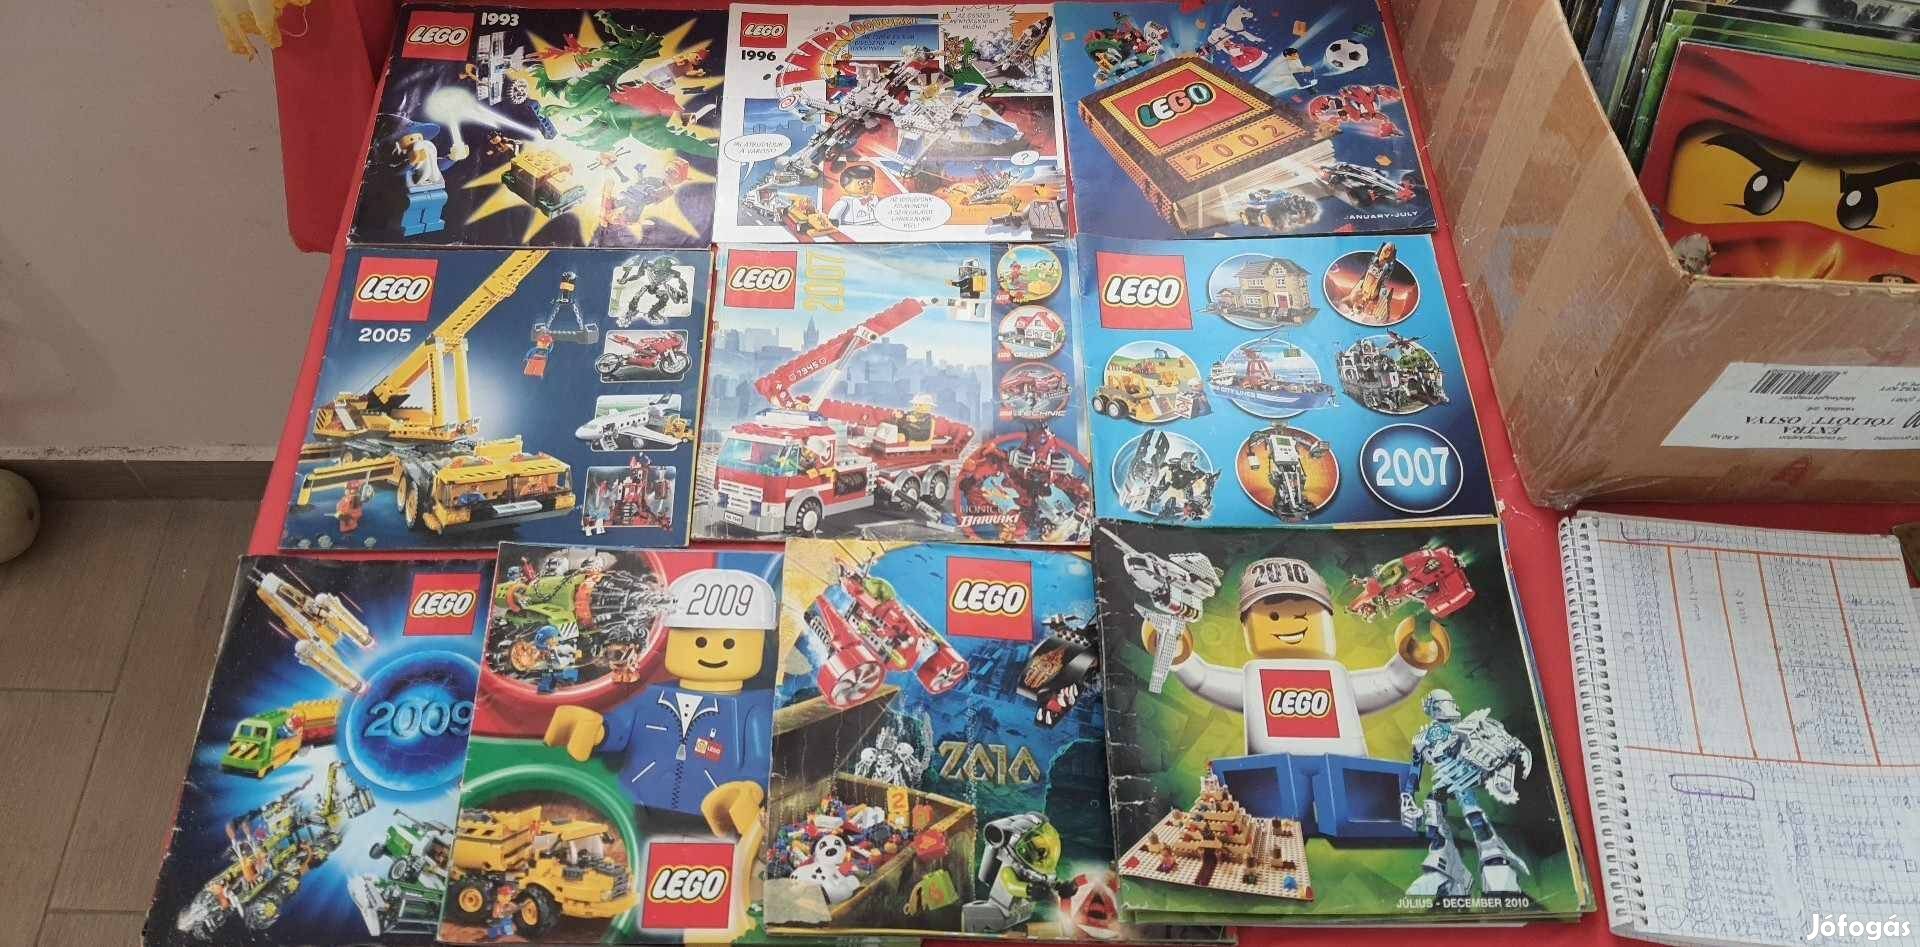 Lego éves katalógus gyűjtemény 1993-2010